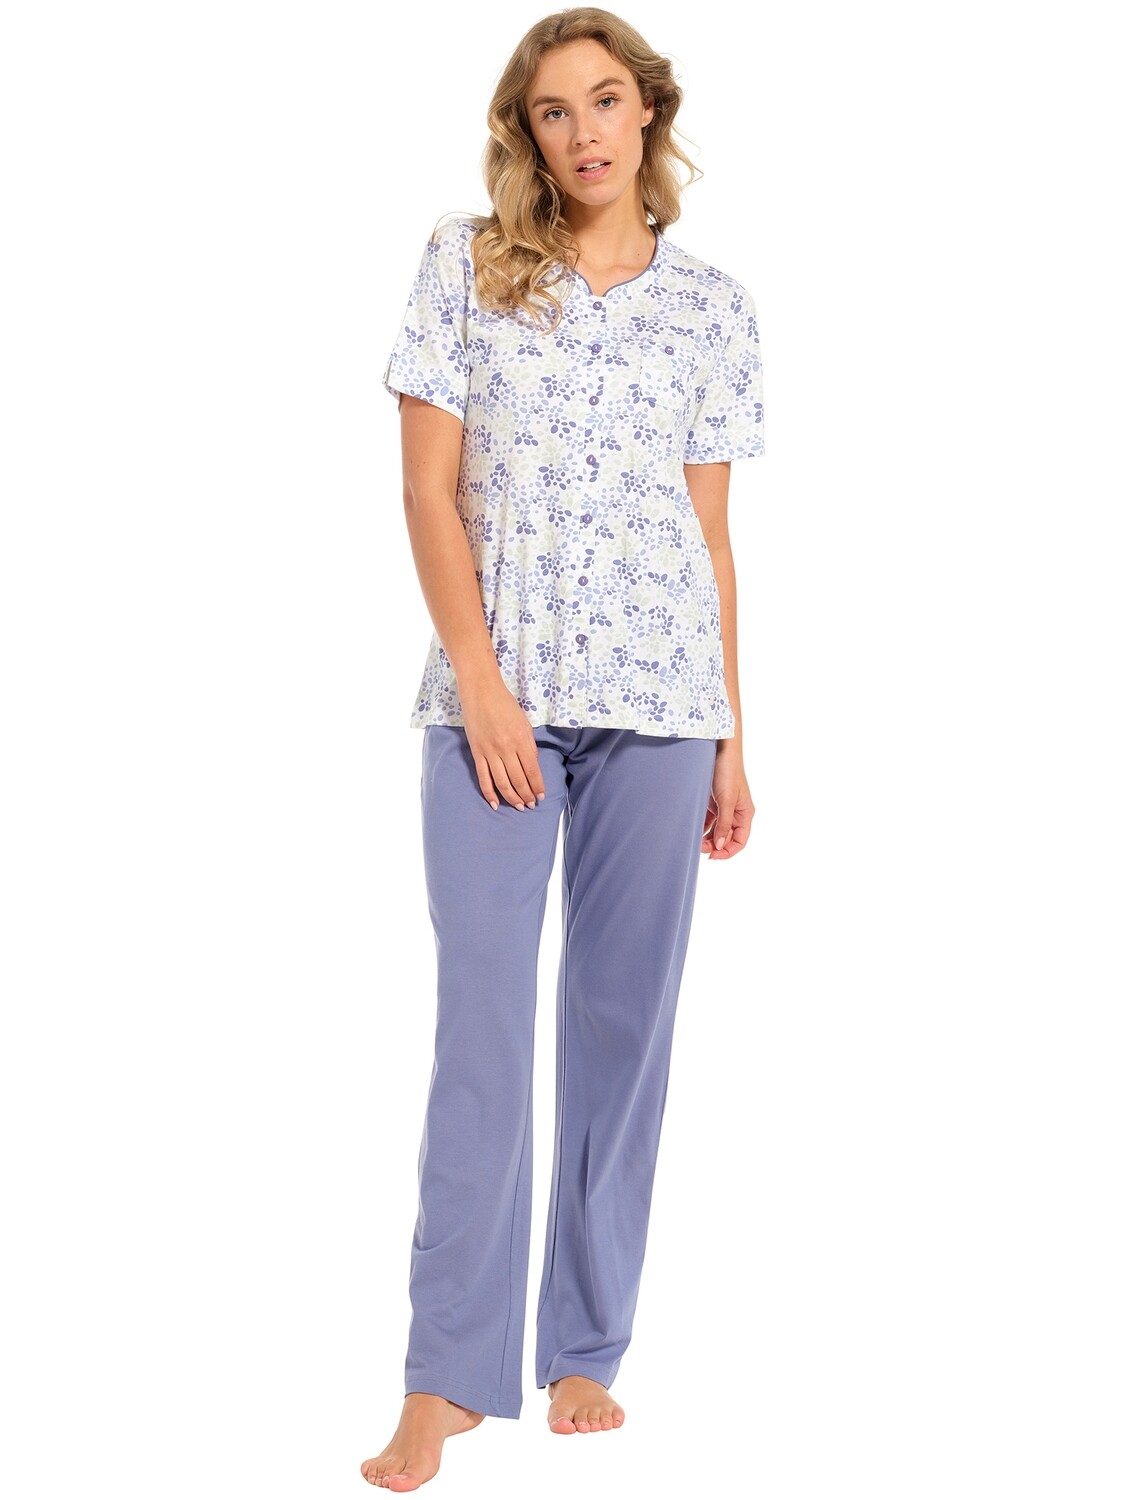 Pastunette pyjama 20241-126-6 Blauw combinatie, Size: 38